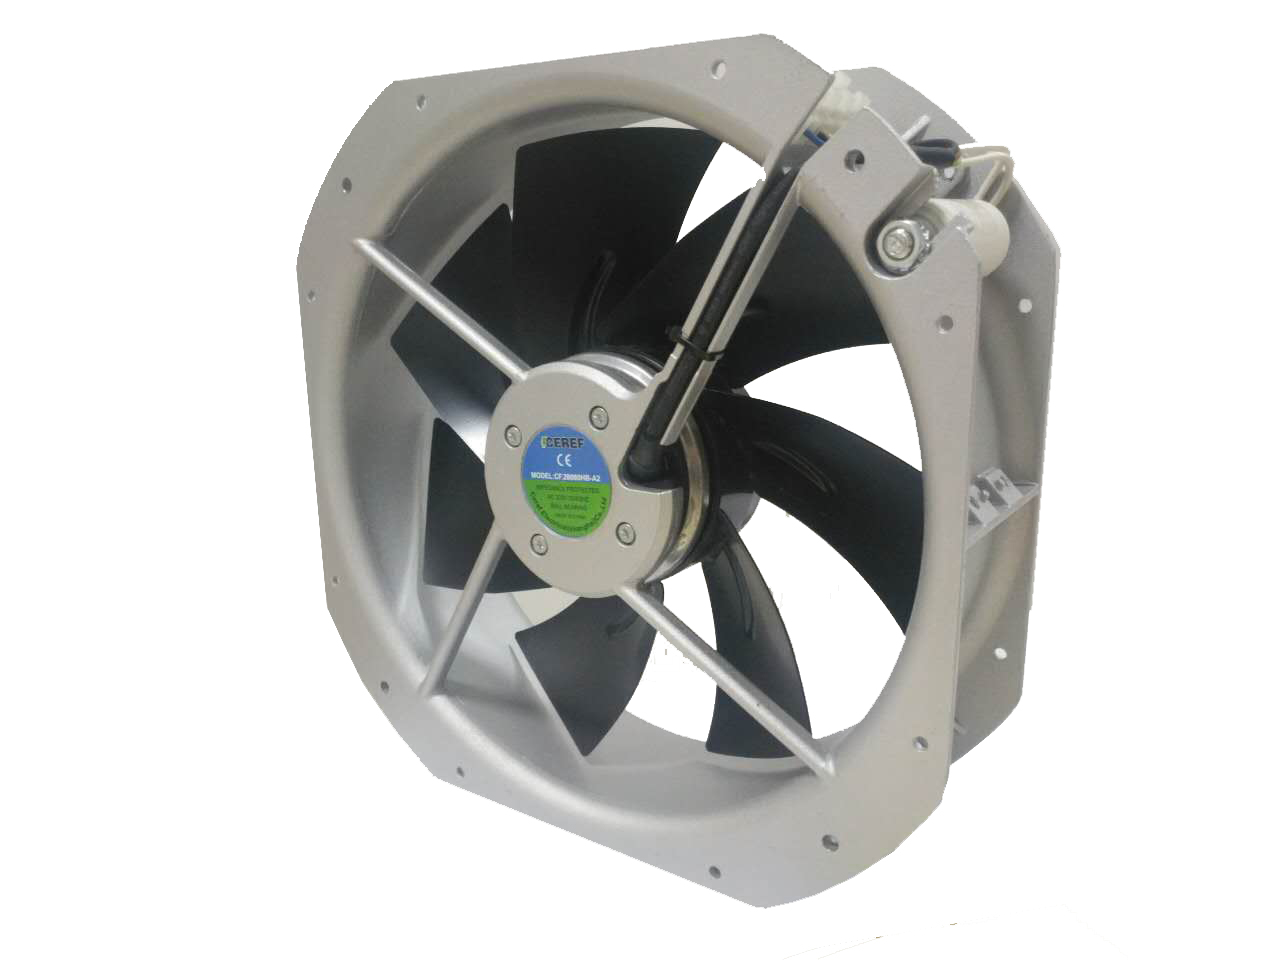 替代卡固充电桩风机 替代威图柜风机 环境监测设备风扇 CF.28080HB-A2 舍利弗CEREF图片